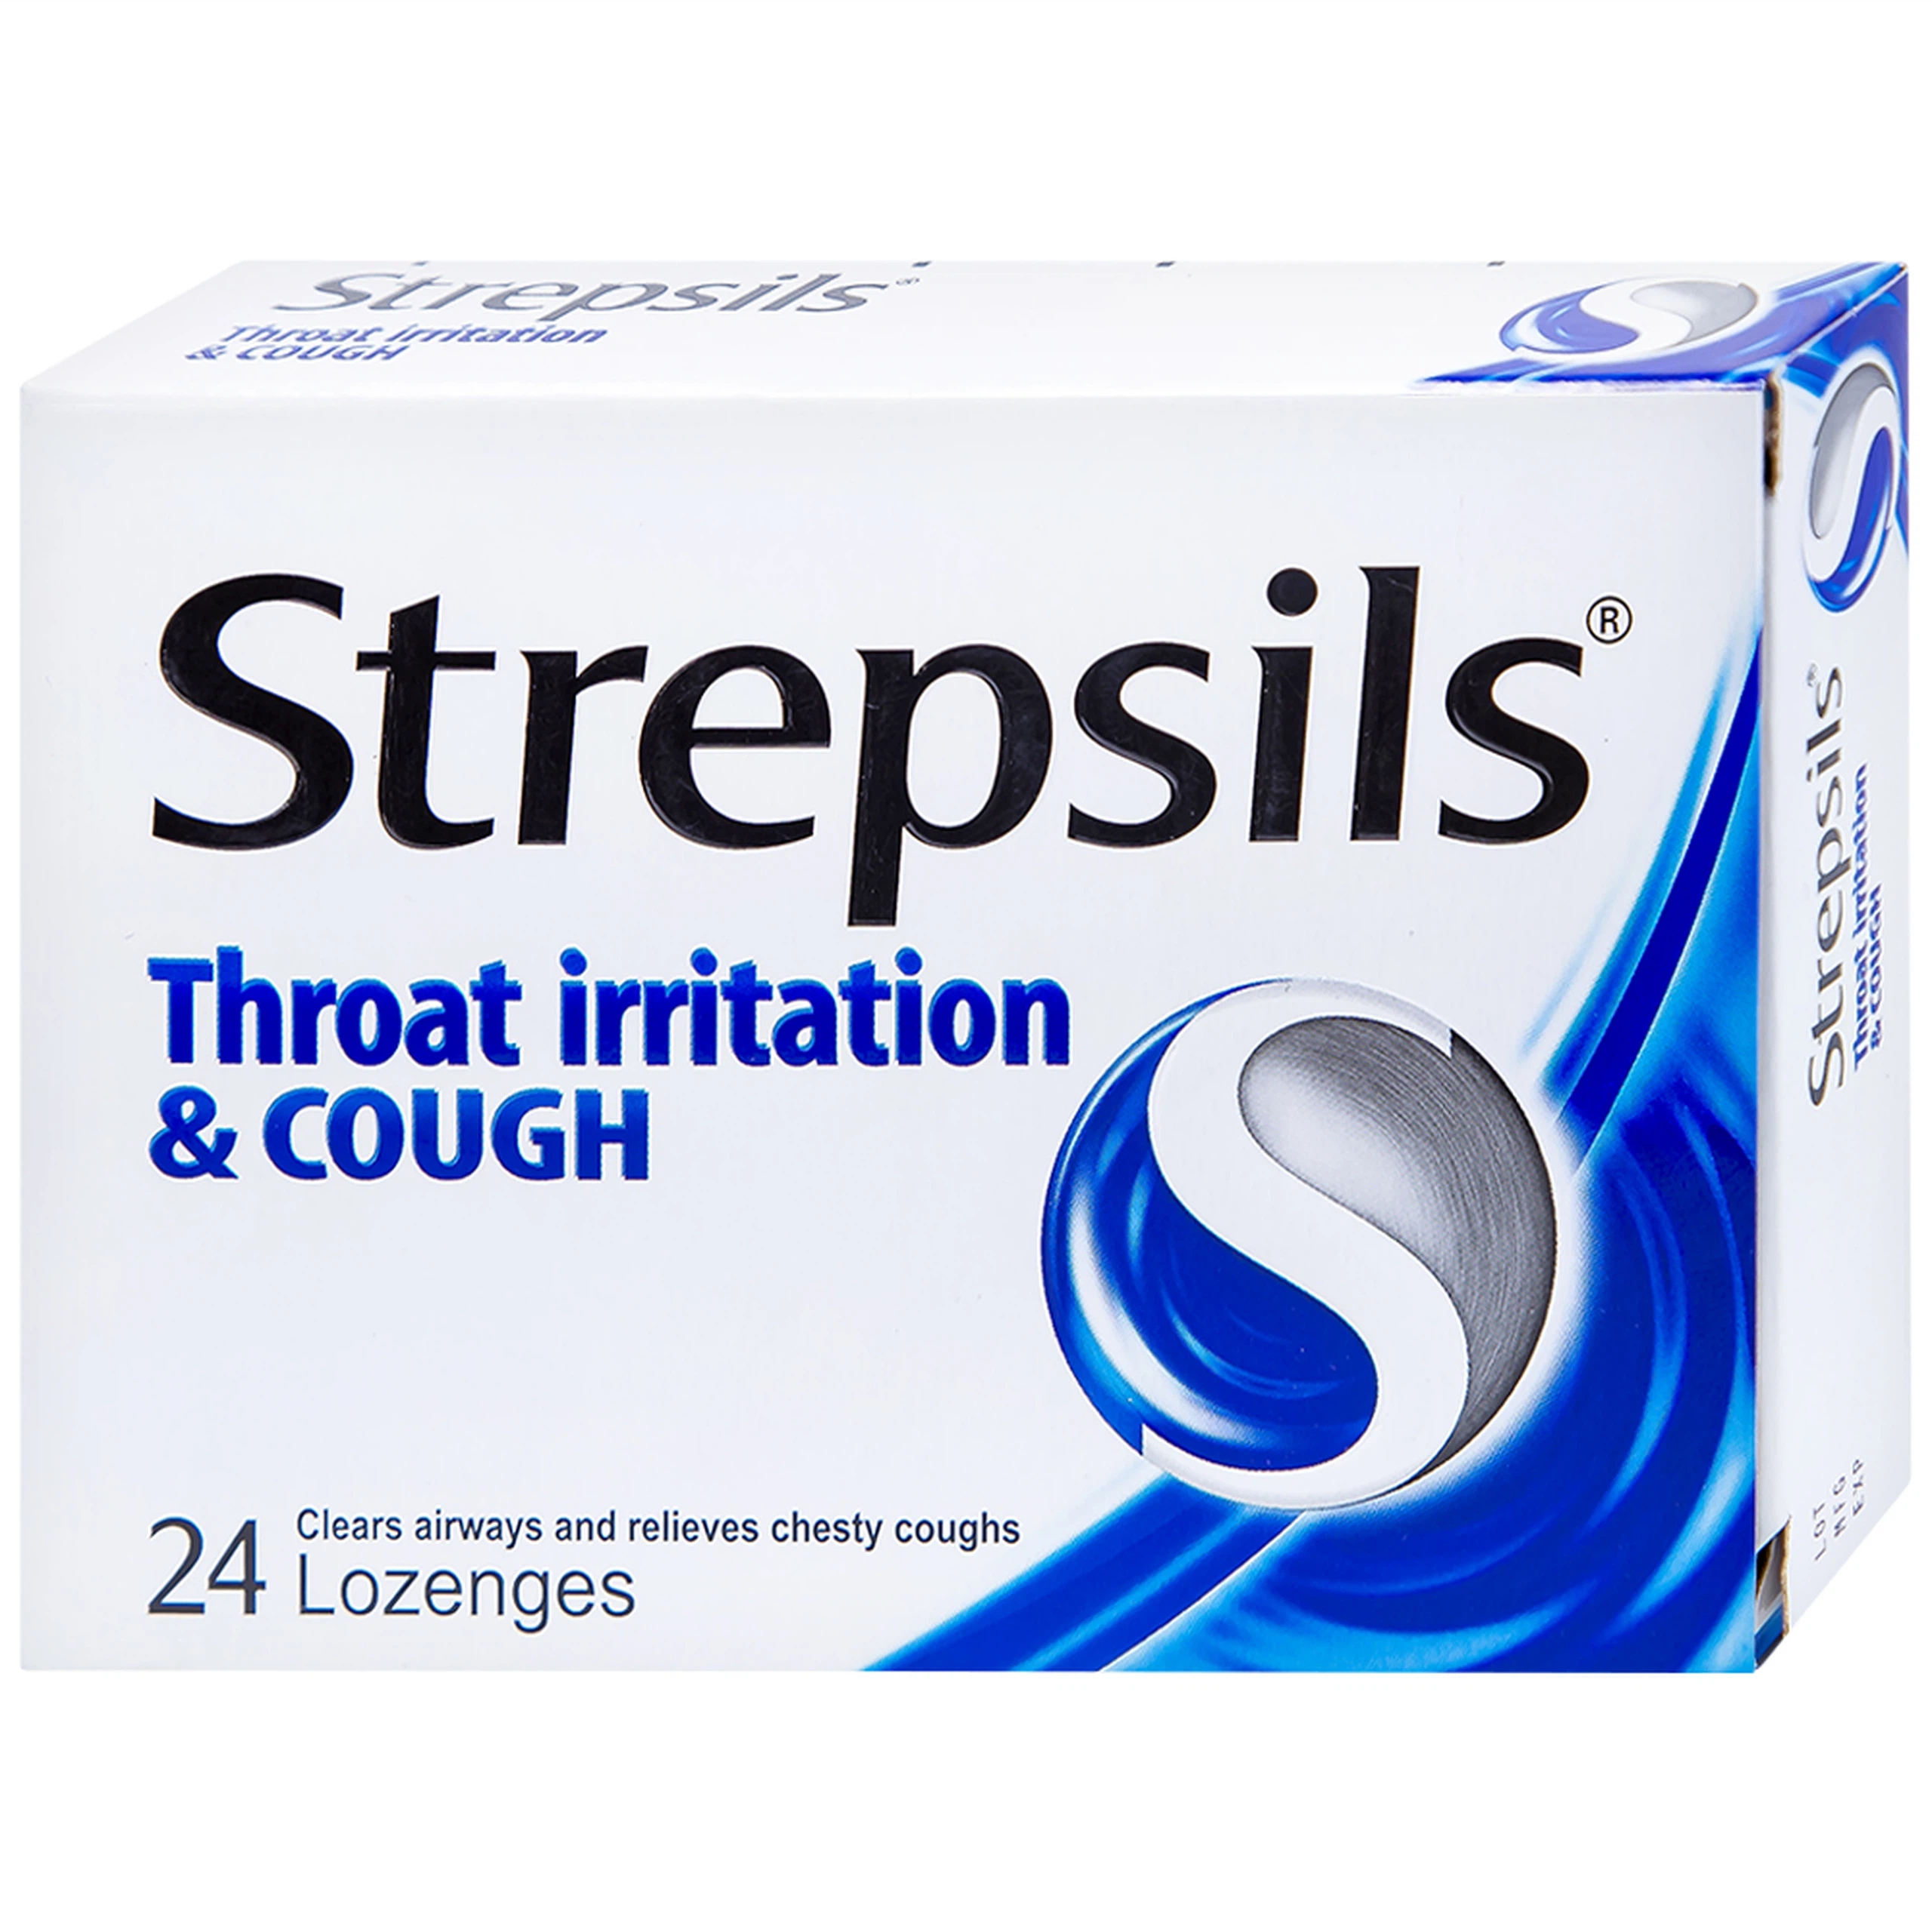 Viên ngậm Strepsils Throat Irritation & Cough Reckitt Benckiser giúp làm sạch đường thở và kiểm soát ho (2 vỉ x 12 viên)